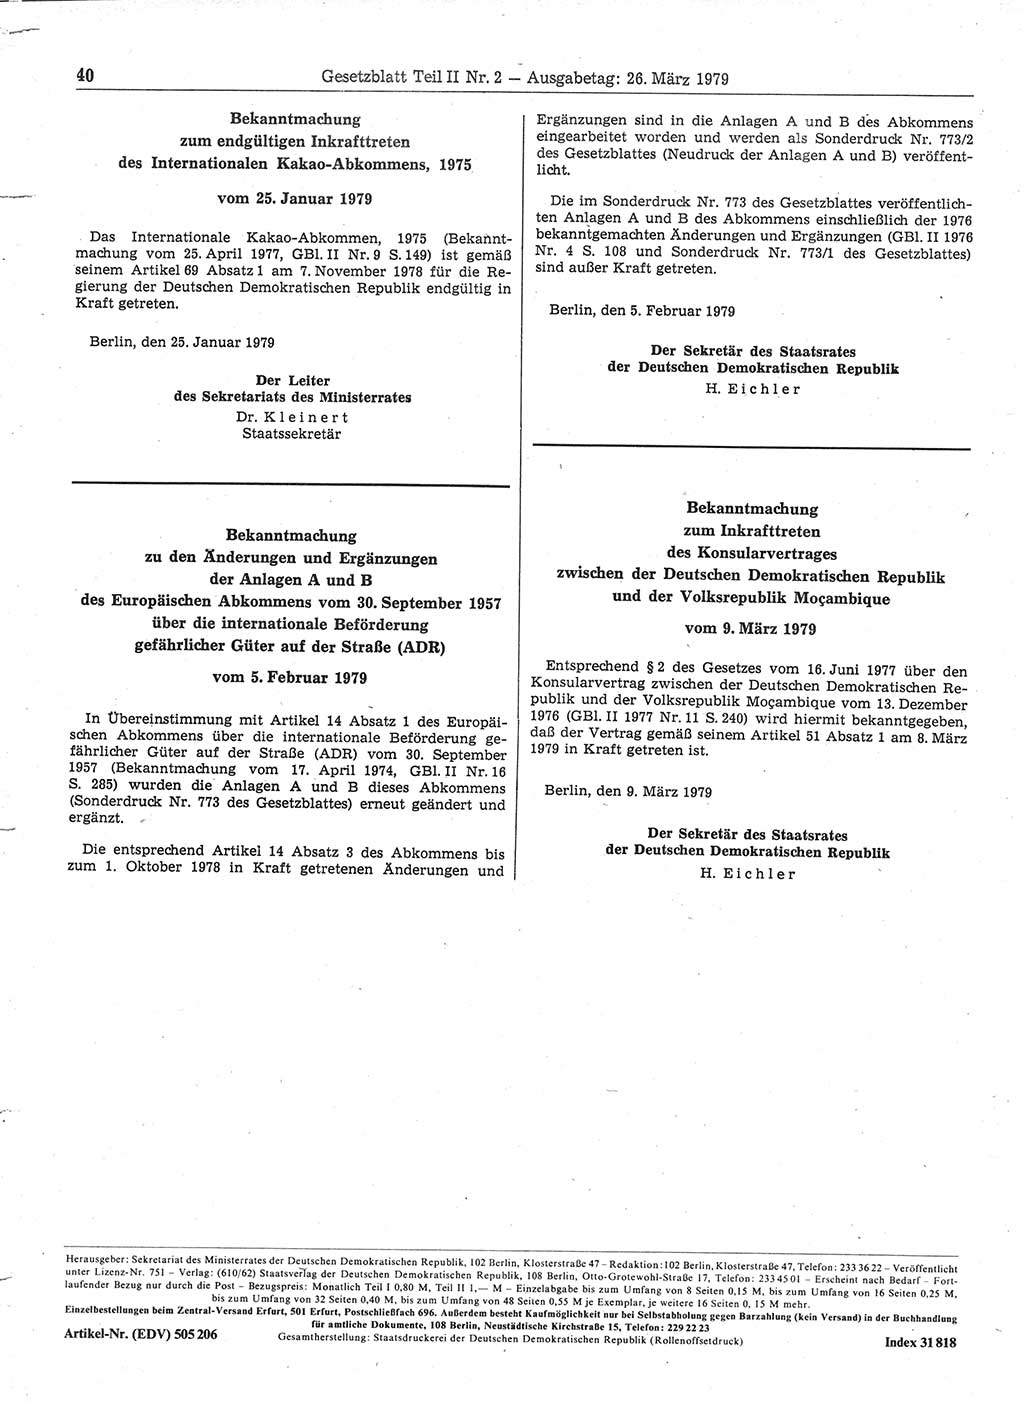 Gesetzblatt (GBl.) der Deutschen Demokratischen Republik (DDR) Teil ⅠⅠ 1979, Seite 40 (GBl. DDR ⅠⅠ 1979, S. 40)